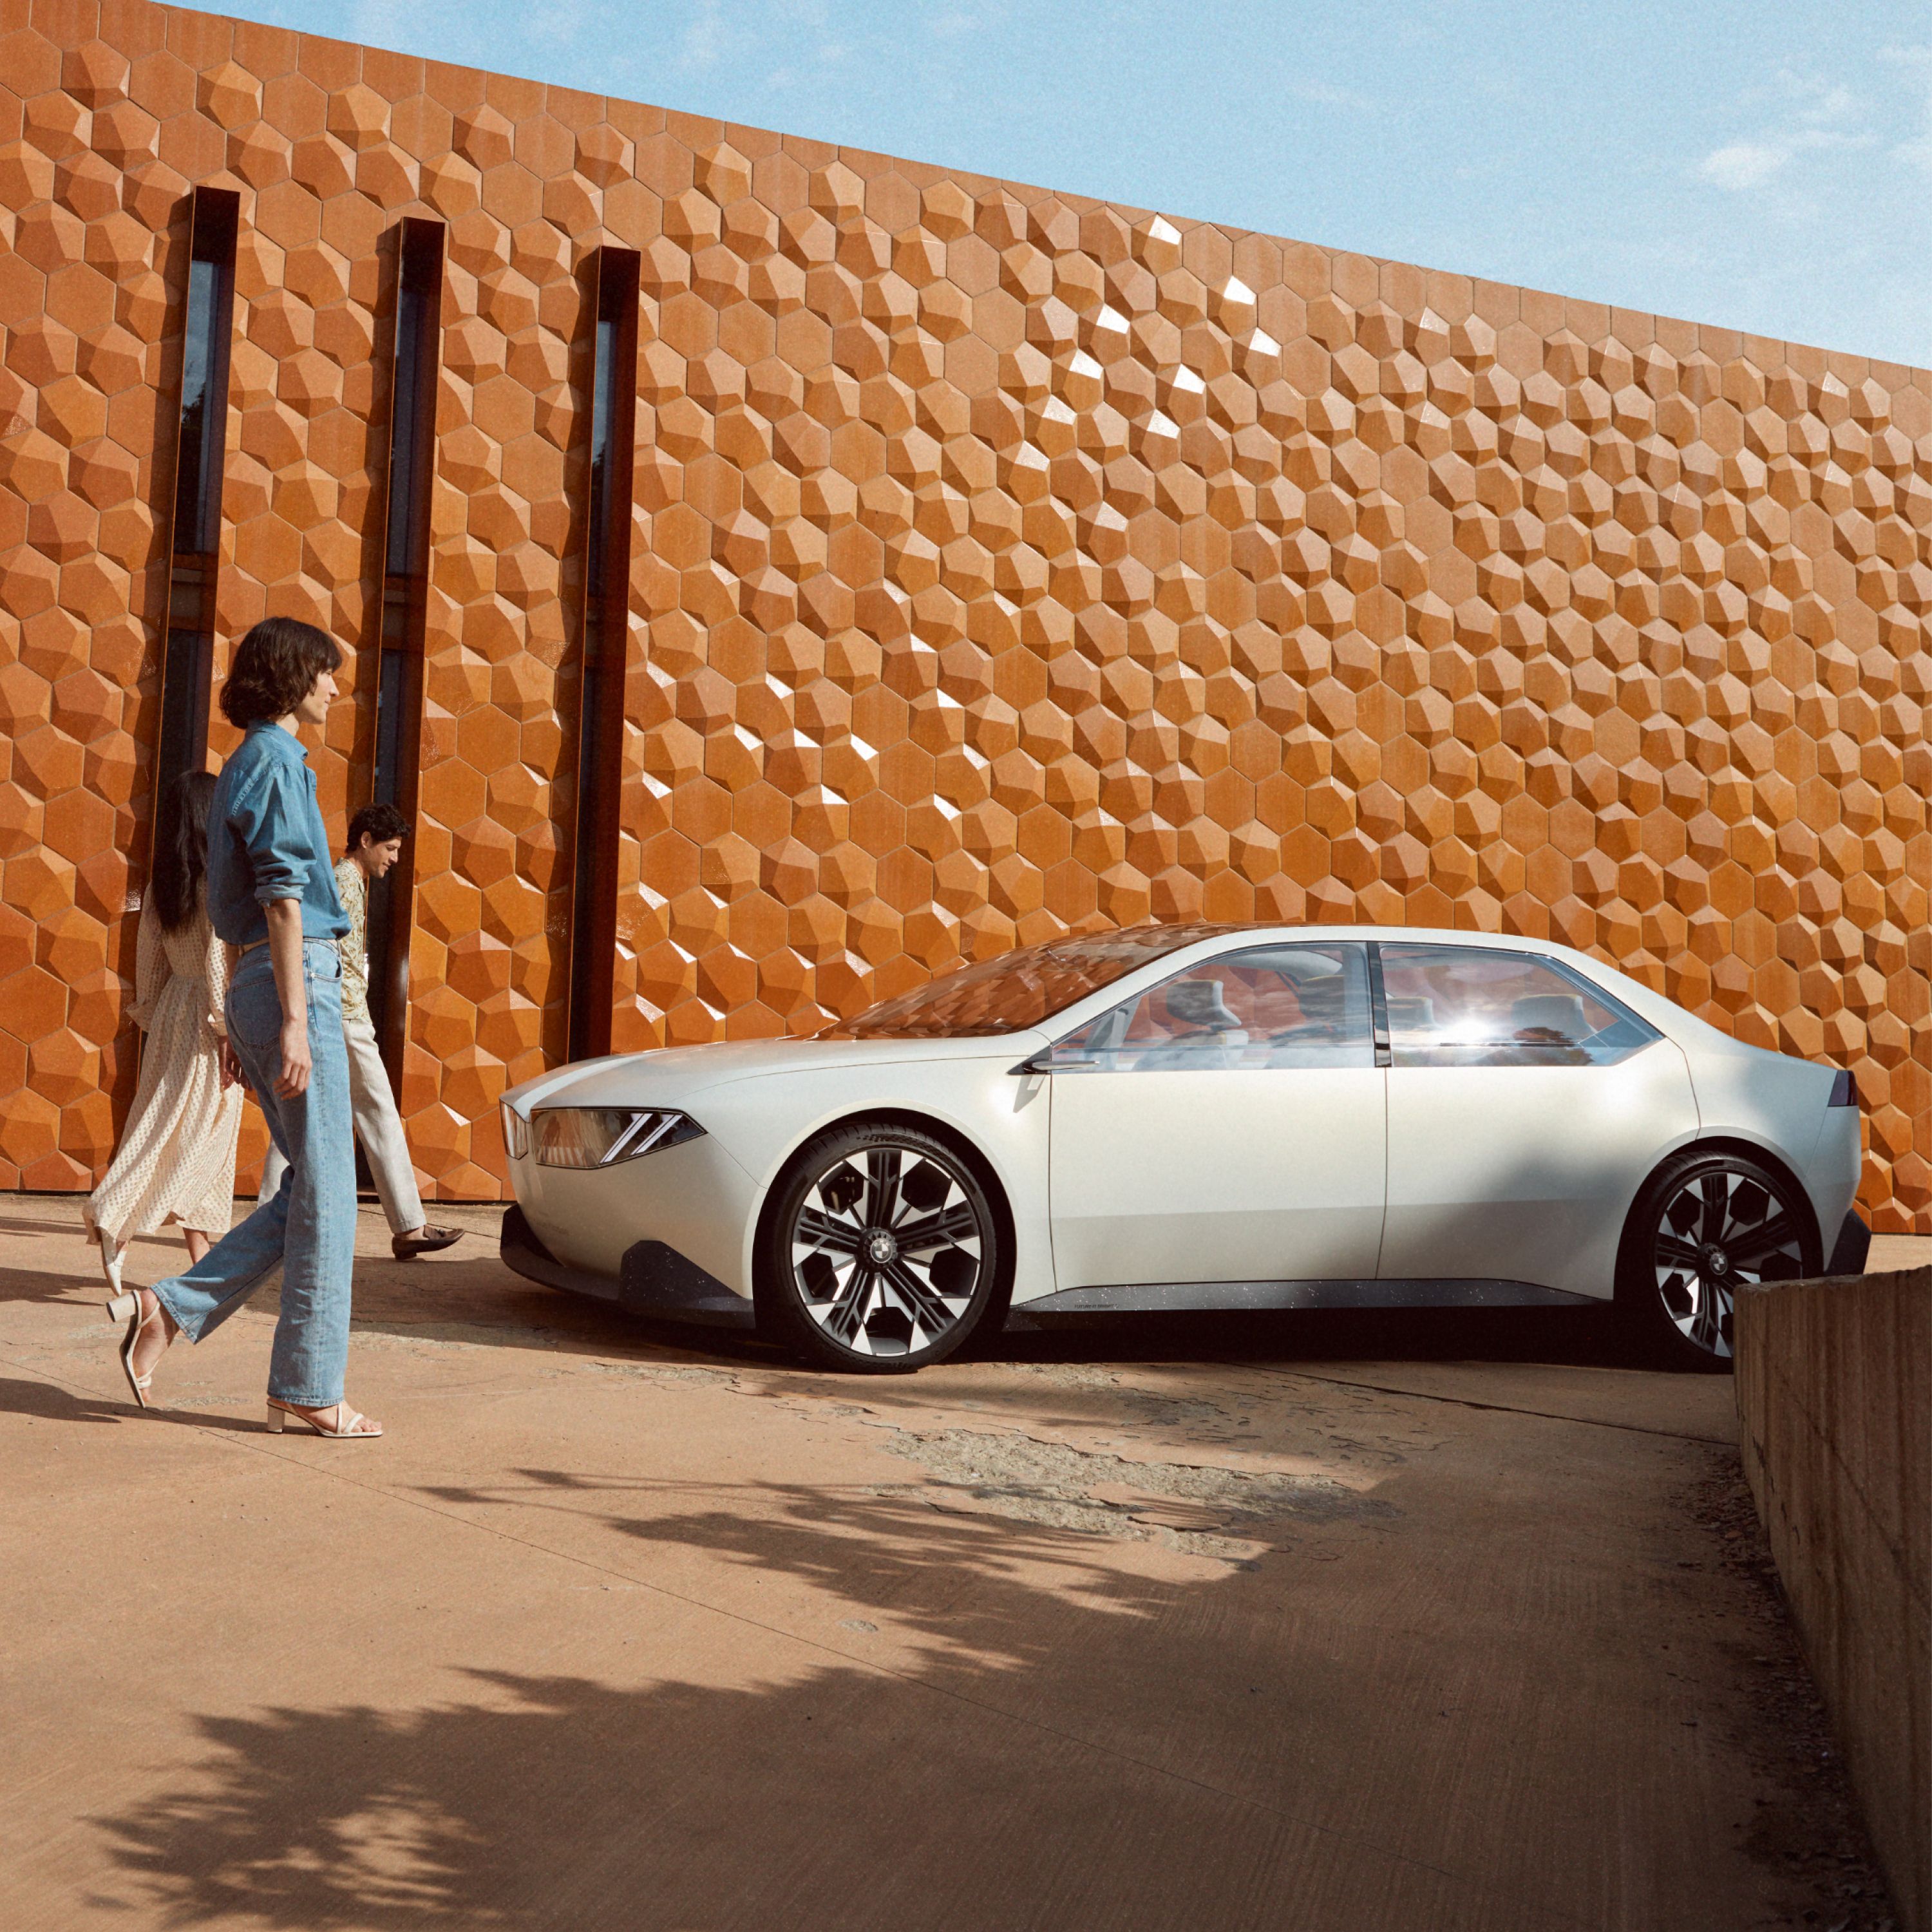 BMW Vision Neue Klasse konceptbil 2023 udvendigt udstyr set fra siden let drejet, ved parkering foran mur, med en kvinde